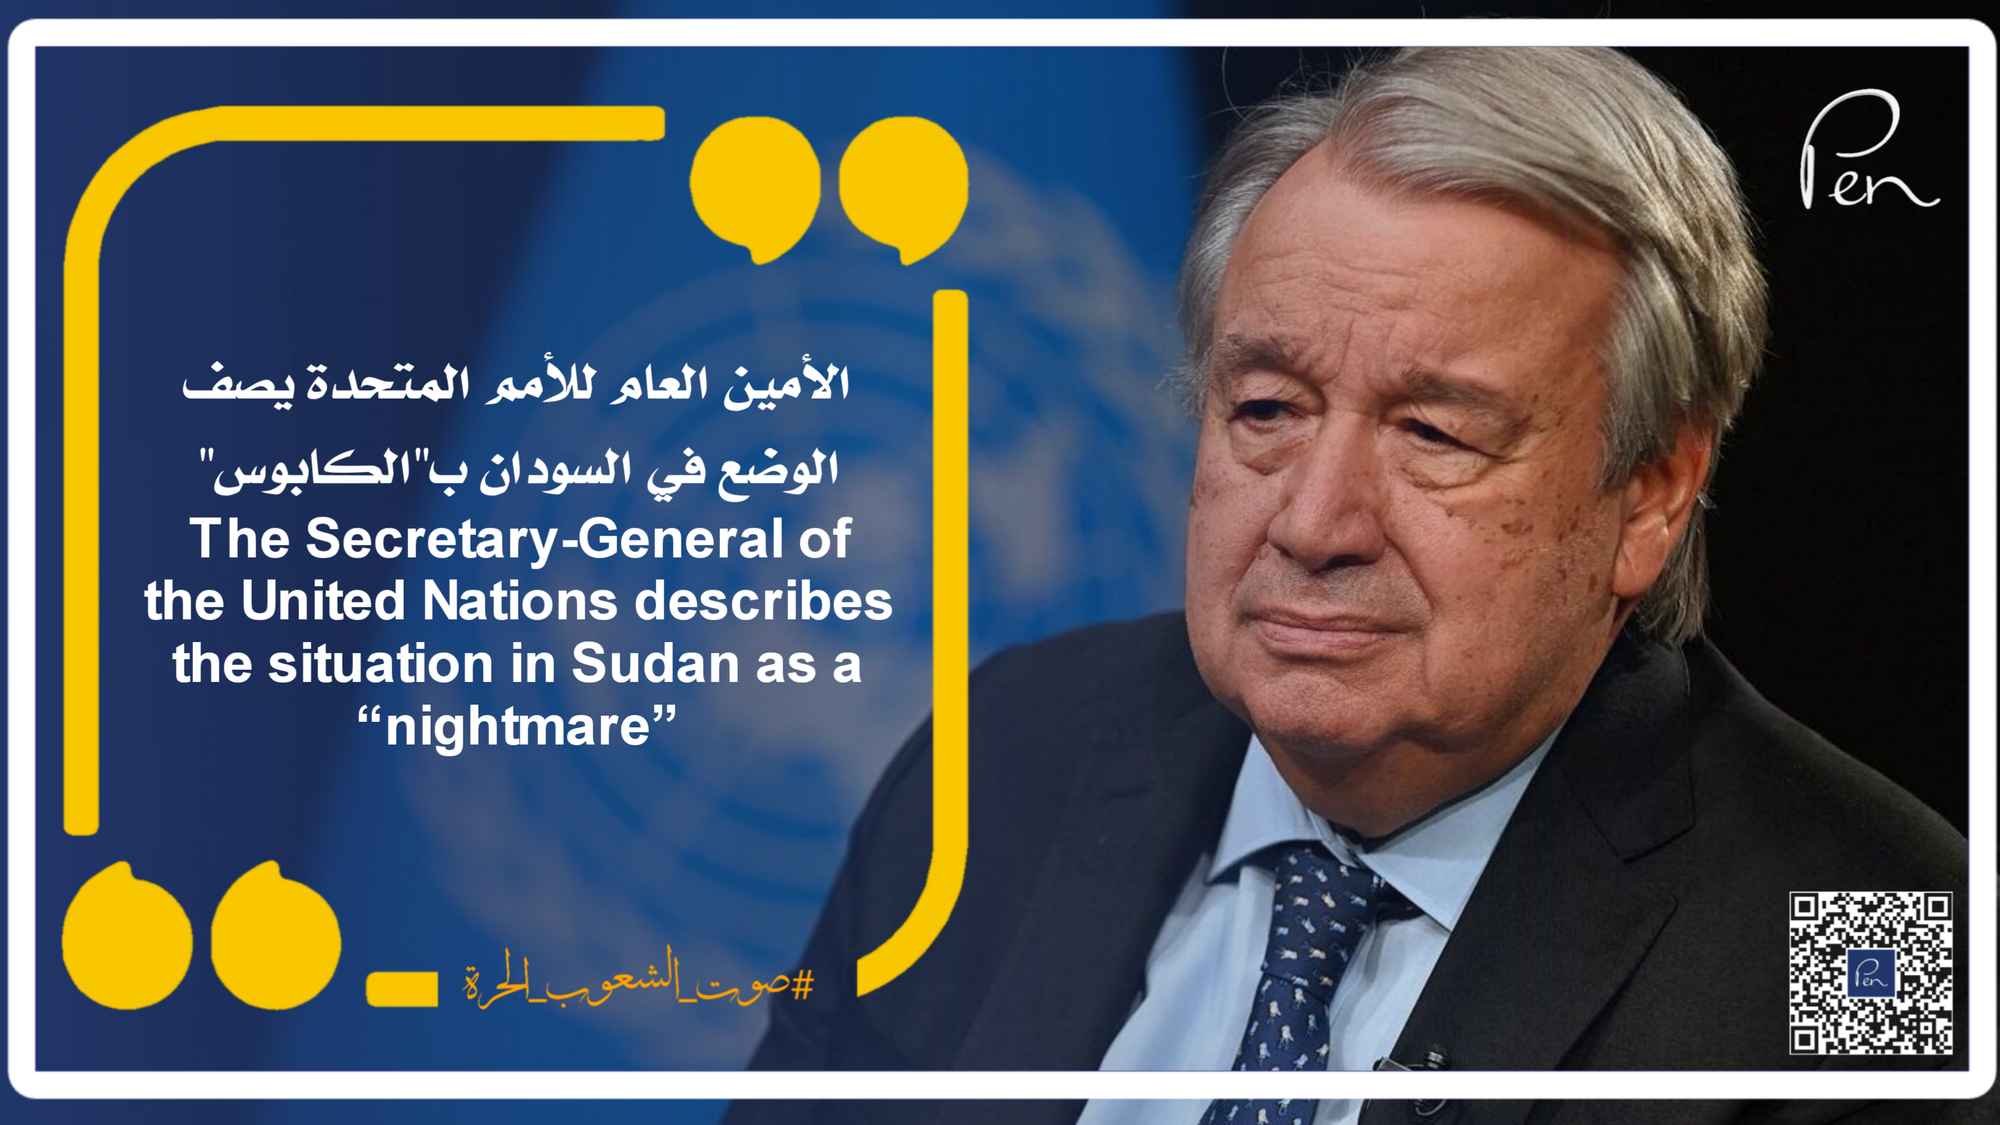 الأمين العام للأمم المتحدة يصف الوضع في السودان ب"الكابوس"